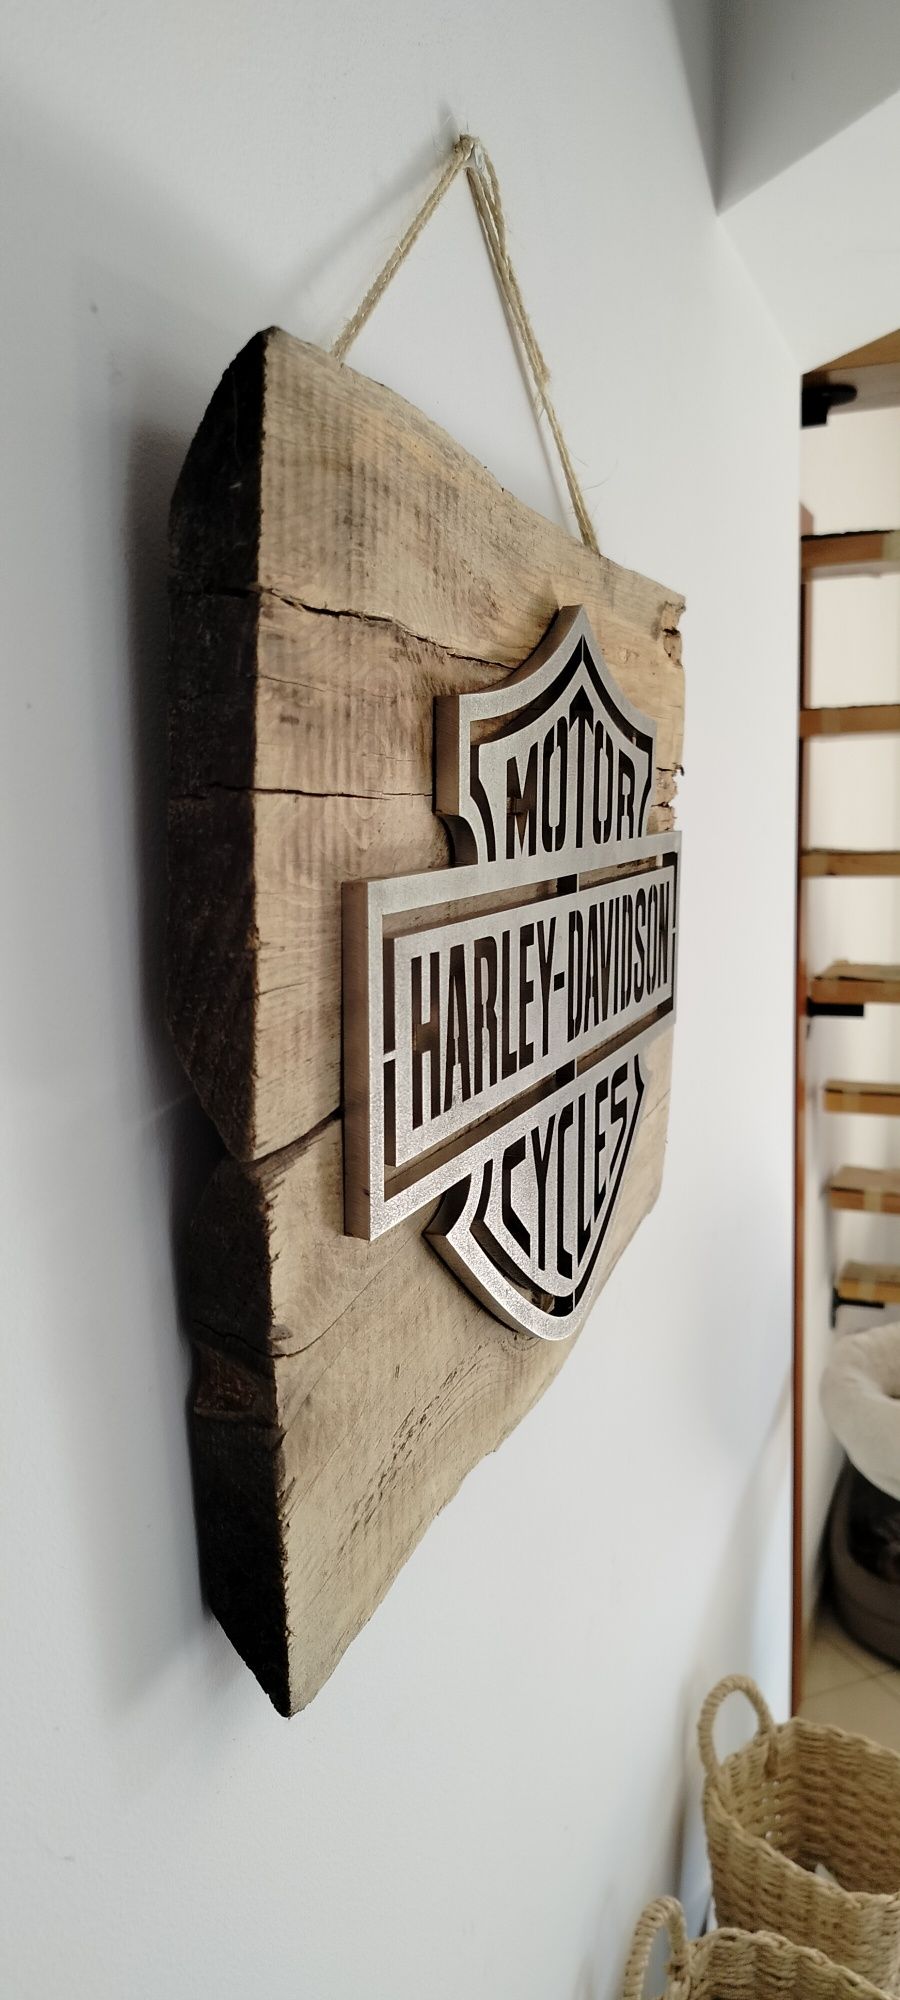 Harley Davidson Logo na drewnie